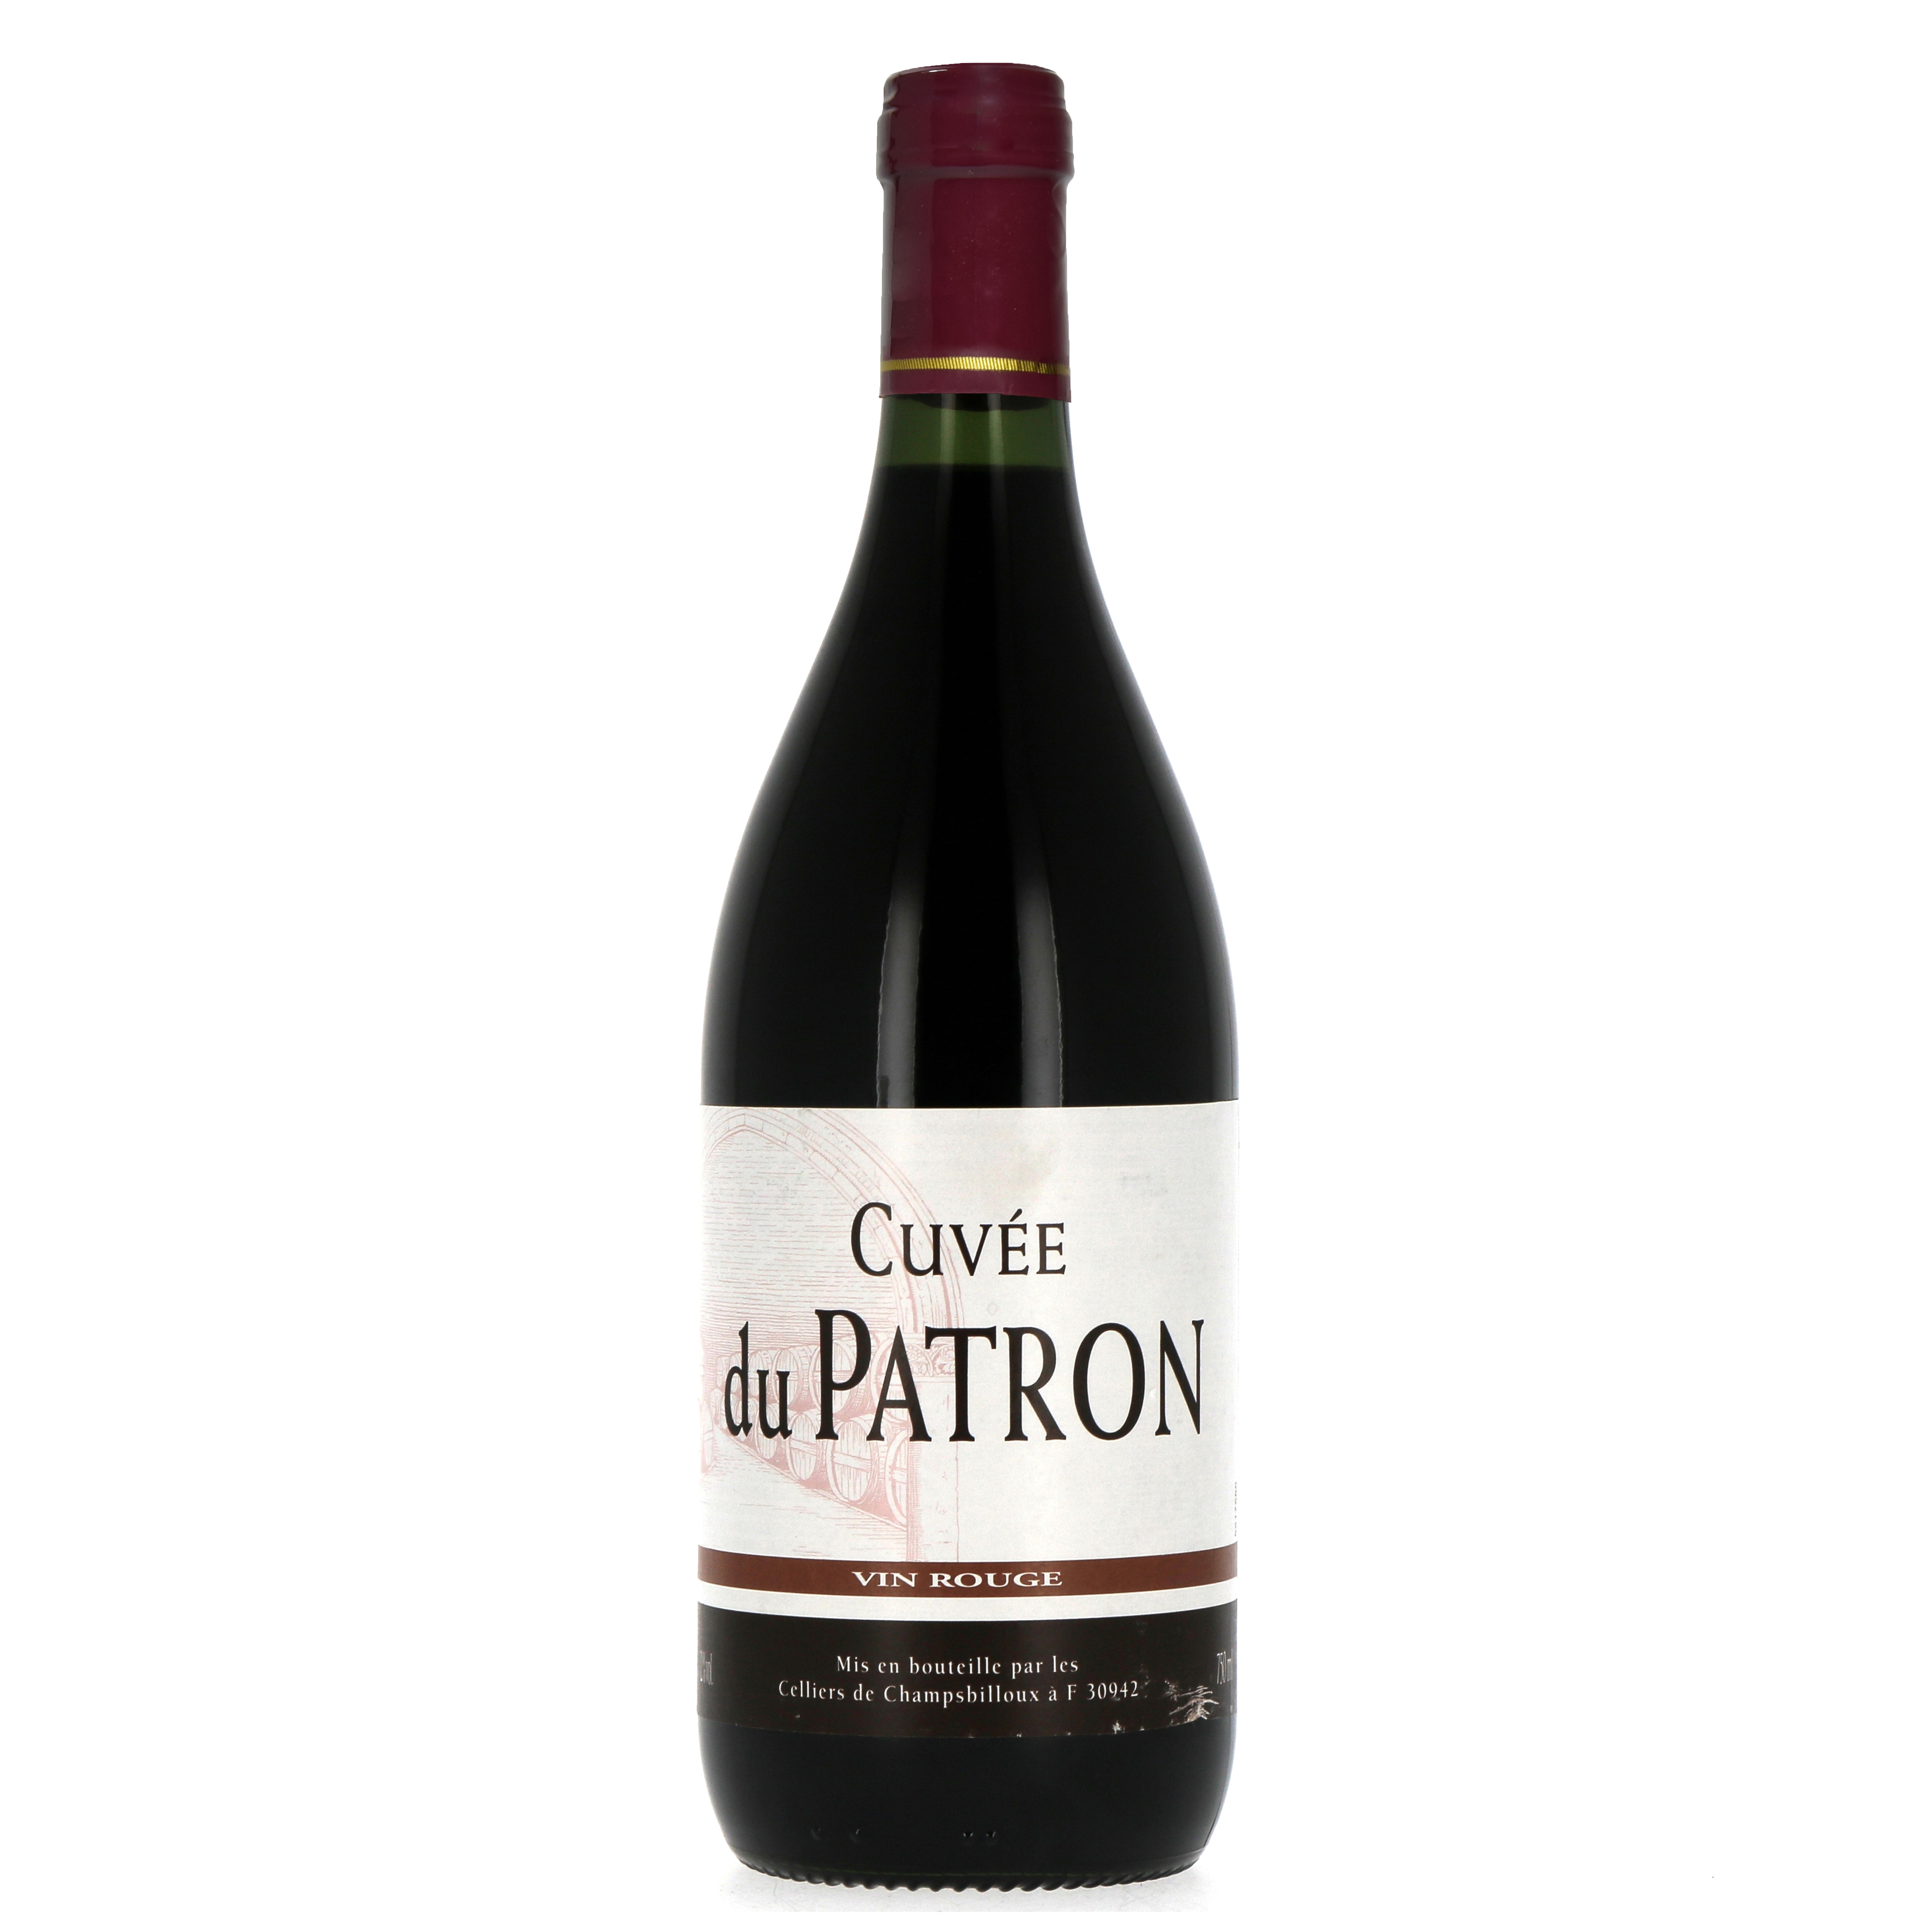 Cuvée du Patron - Vin rouge de l'union européenne (750 ml)